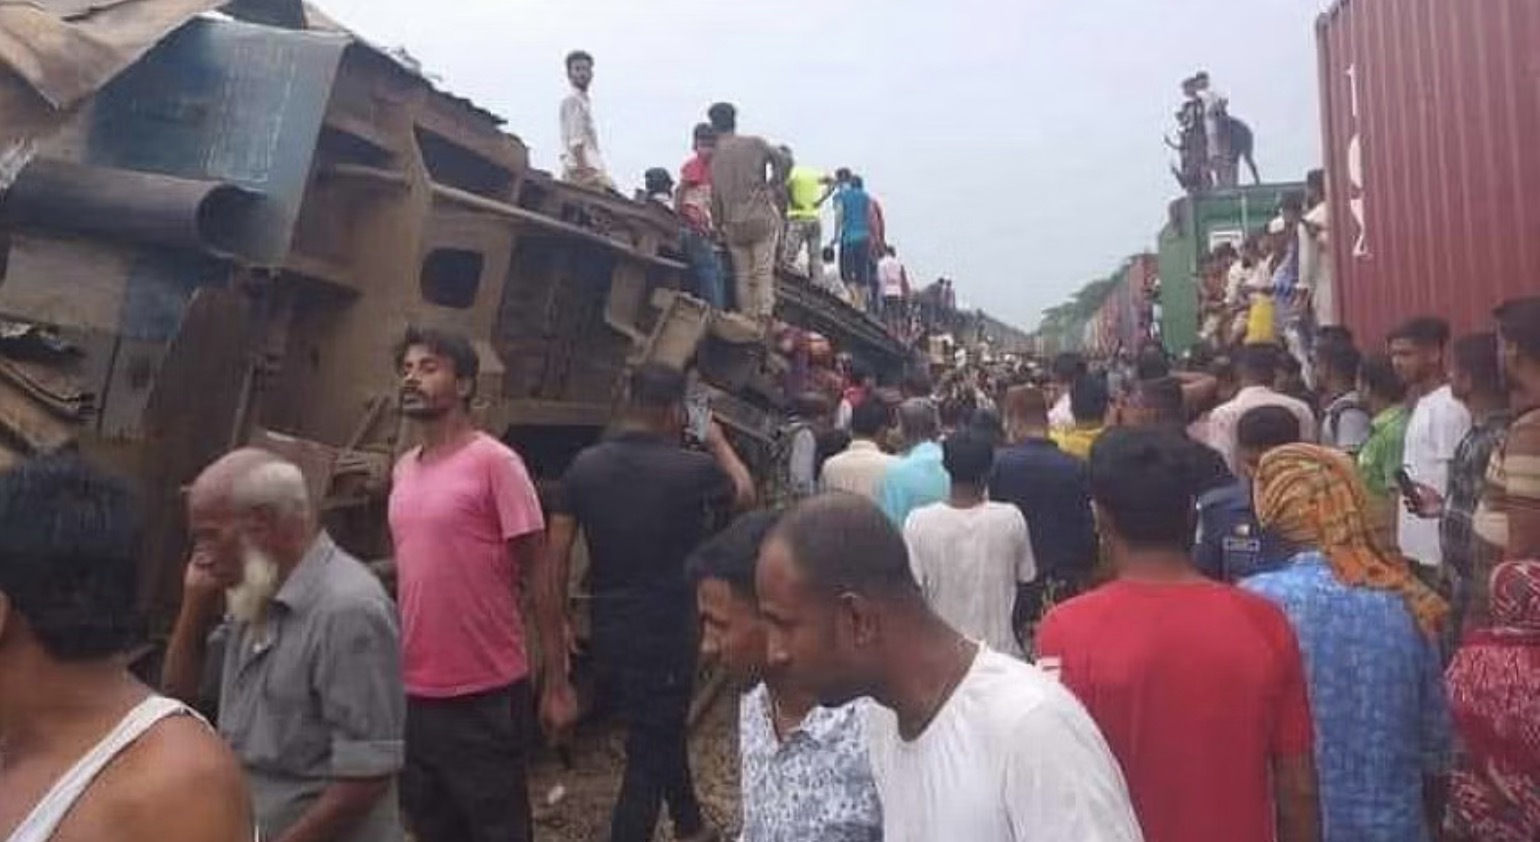 孟加拉国火车相撞事故已造成至少20人死亡